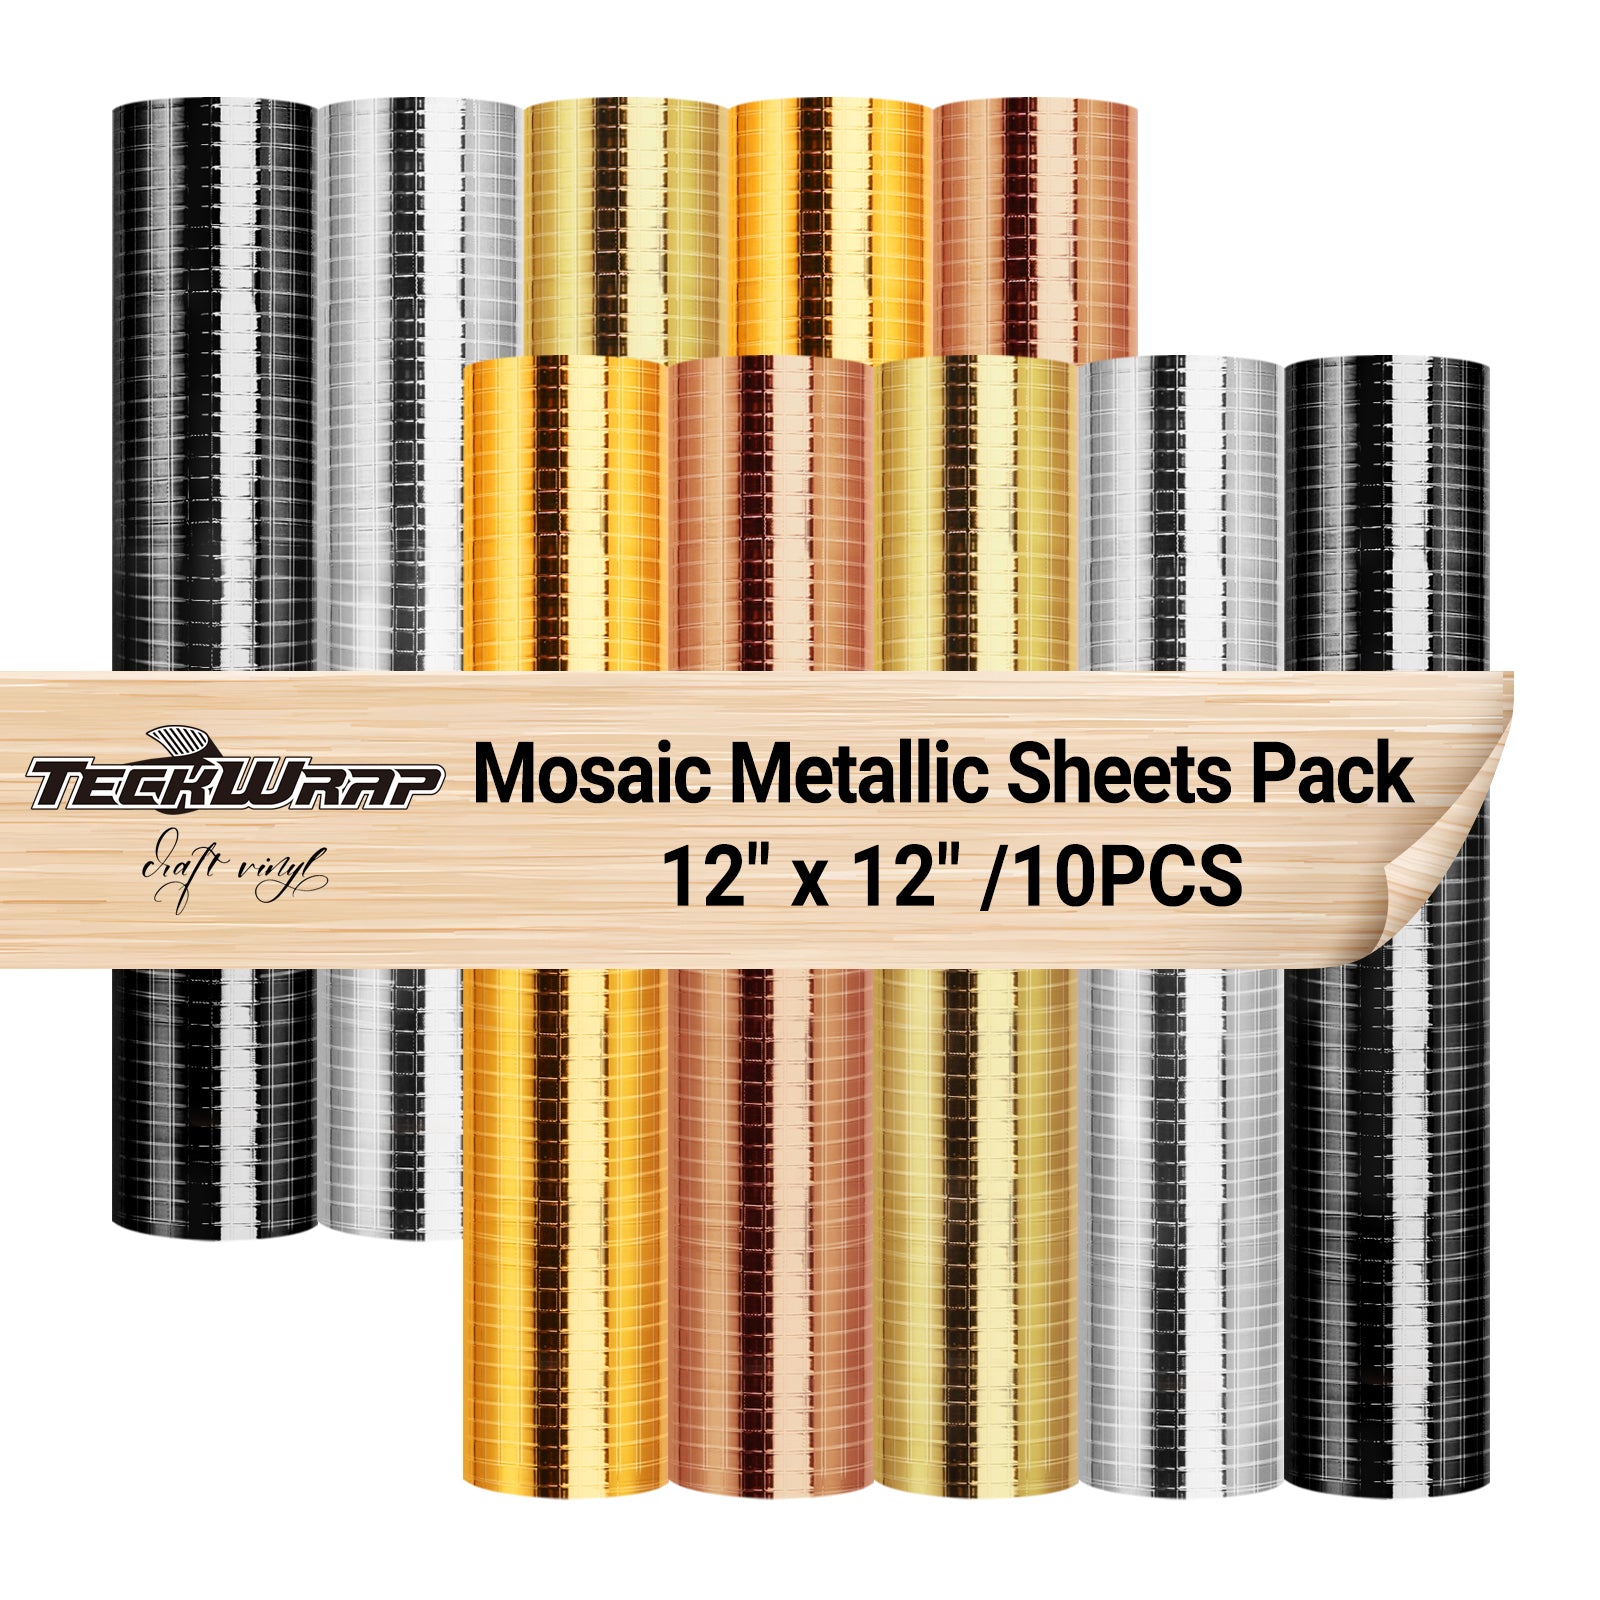 Mosaic Metallic Vinyl Sheets Pack , Mosaic Metallic Sheets 